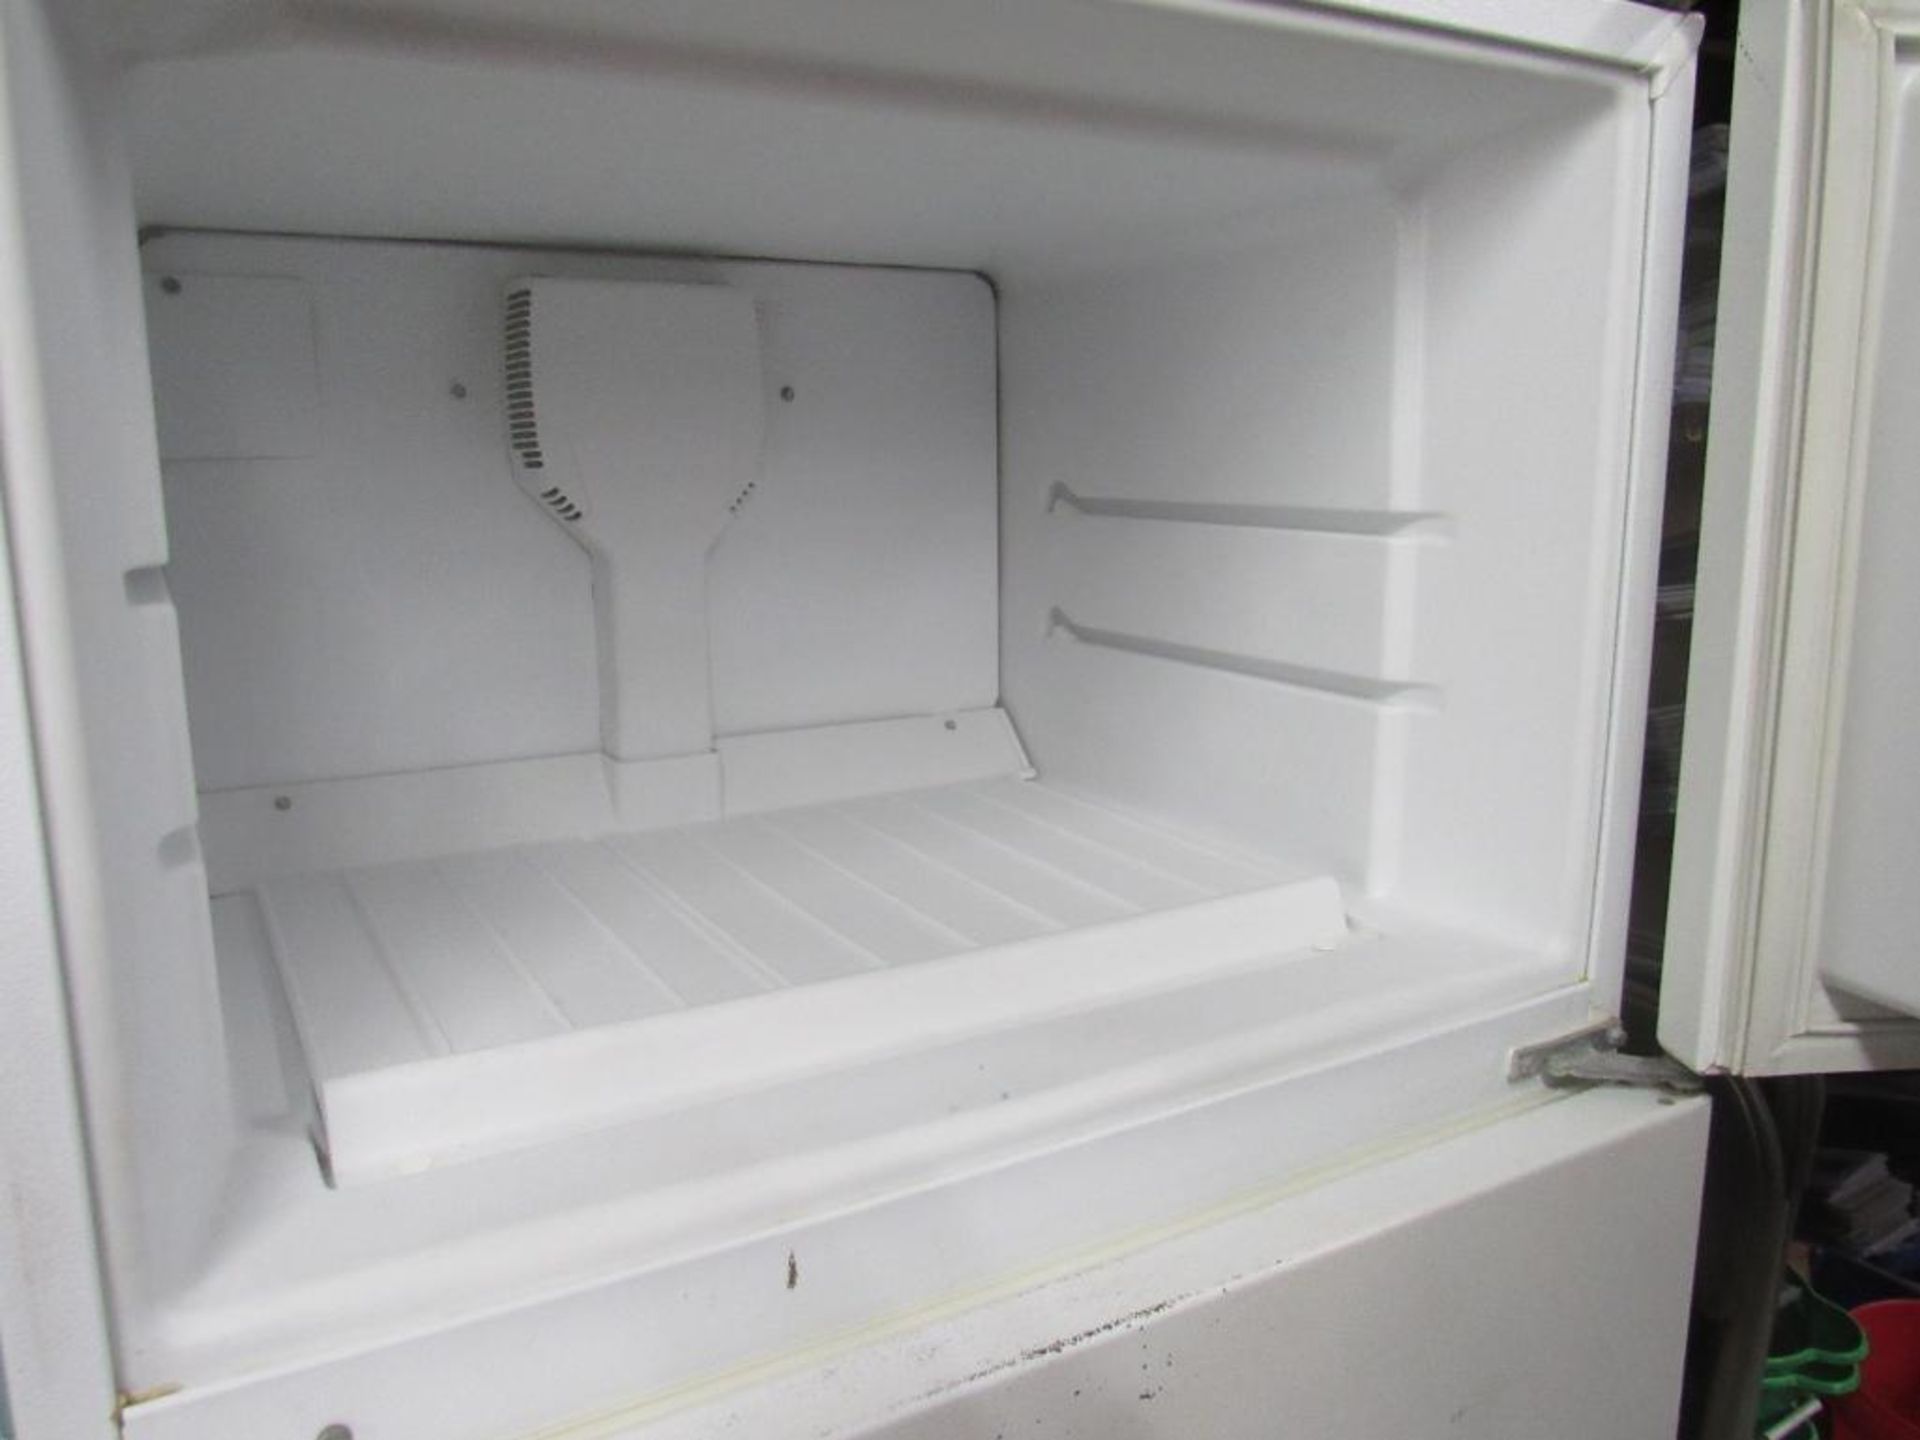 Refrigerator - Image 4 of 7